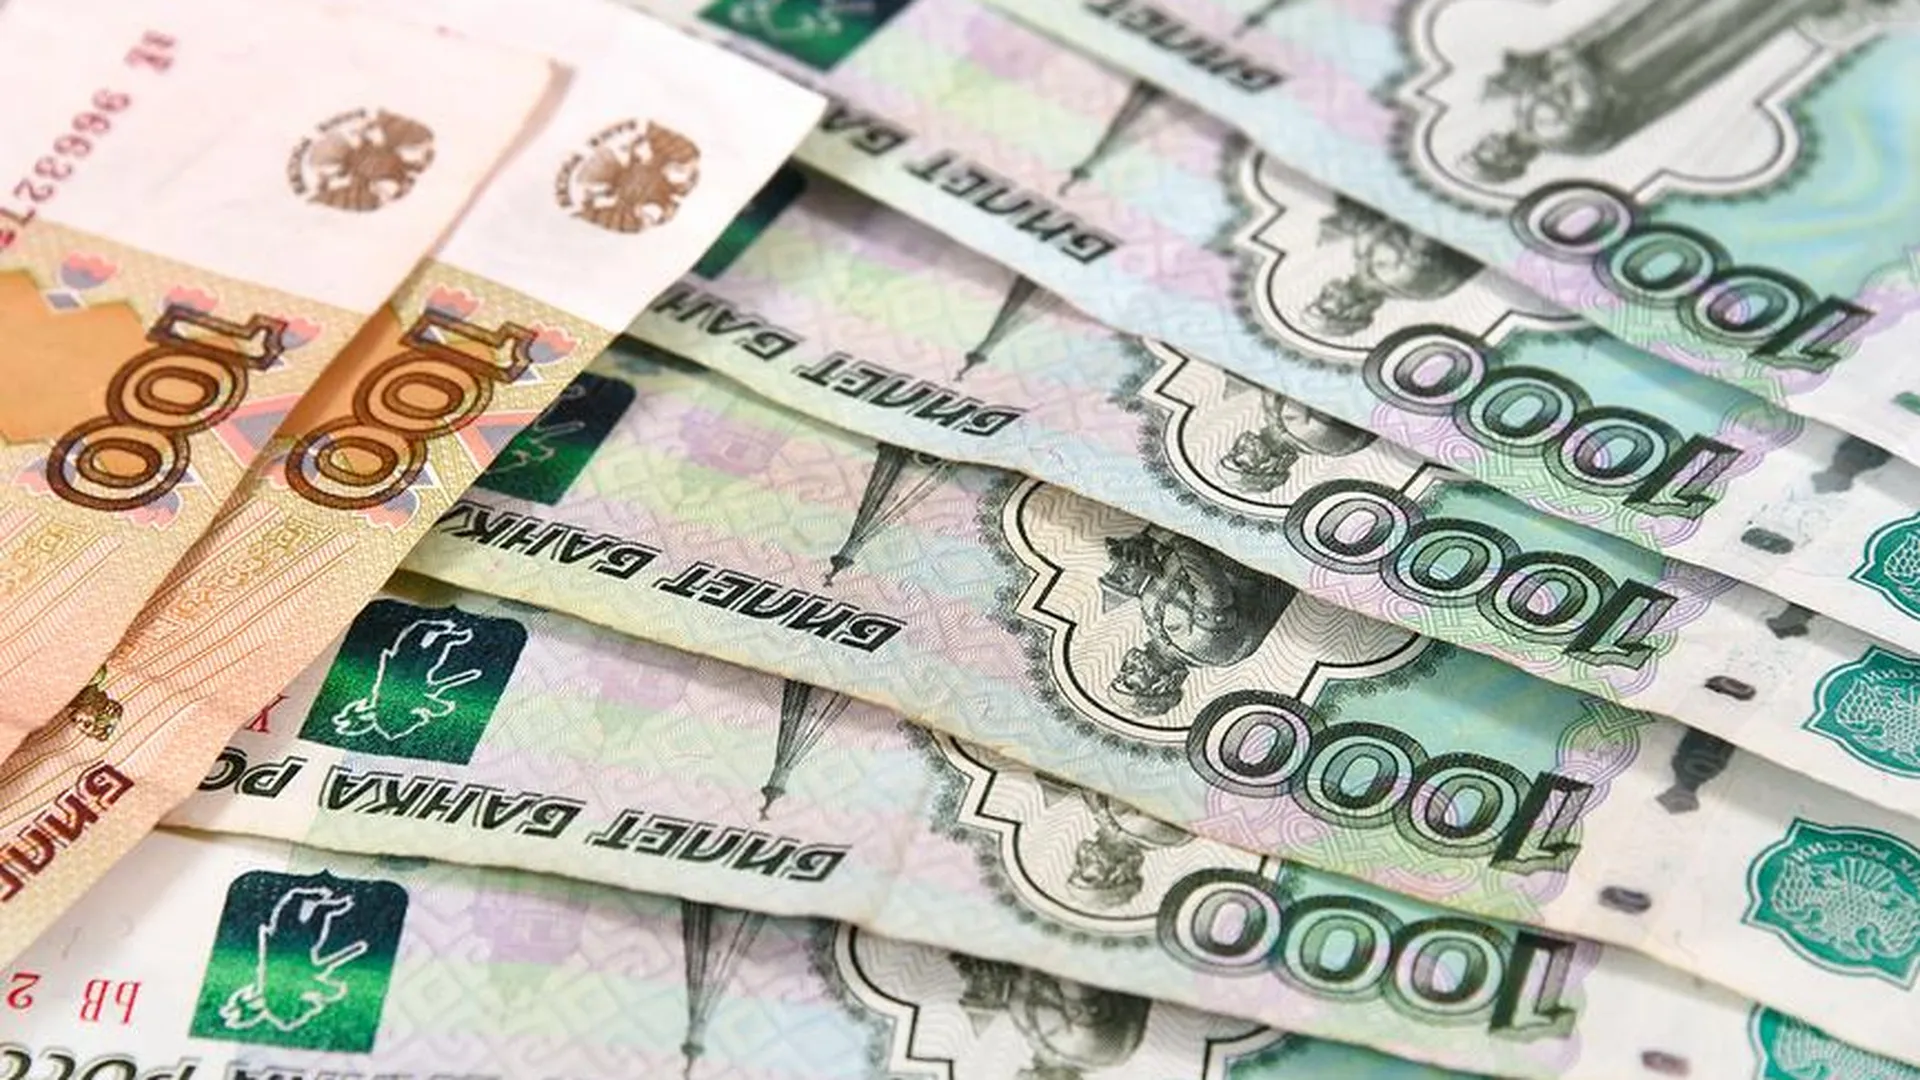 Чистая прибыль банка «Санкт-Петербург» за год снизилась на 10,9%